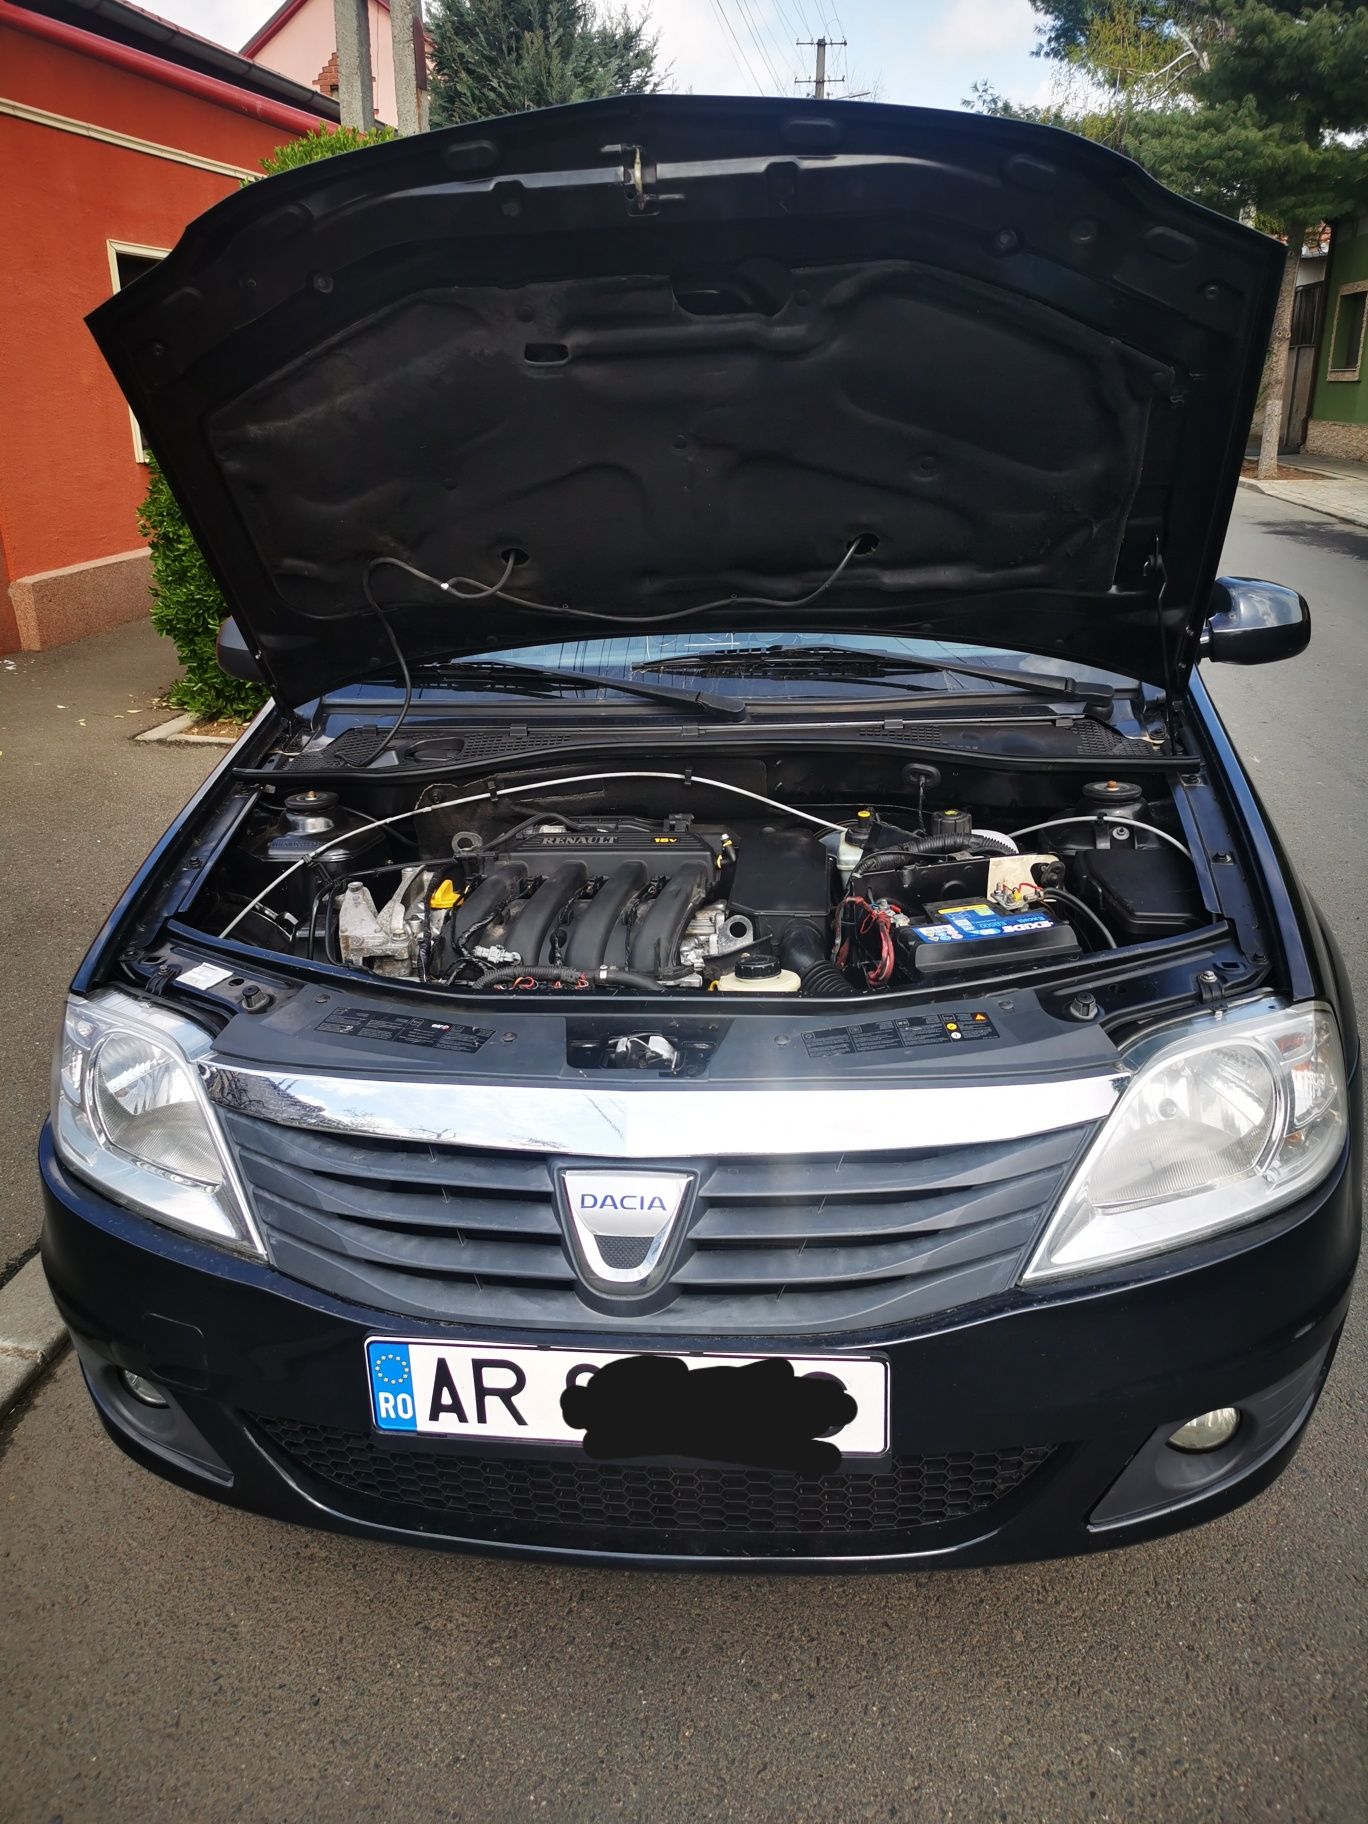 Dacia Logan INSCRISA mcv 2012 1.6 benzina gaz